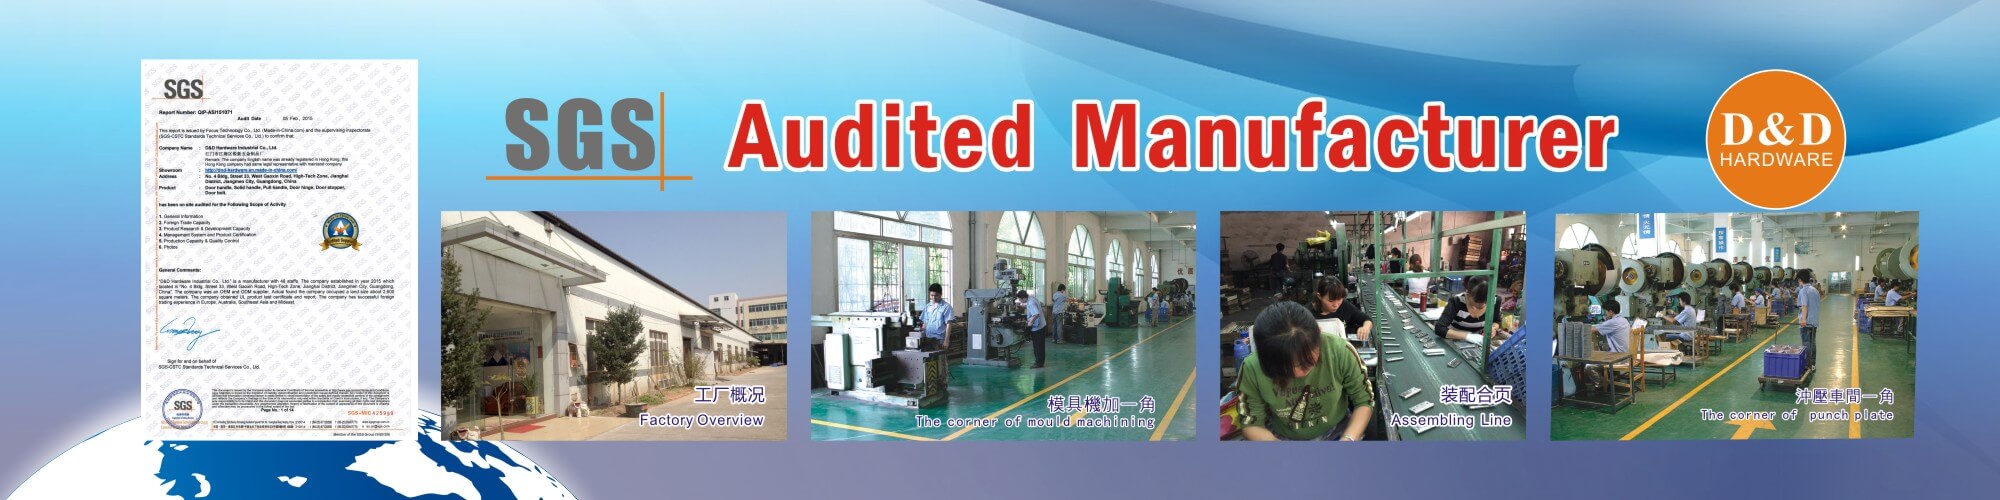 SGS audited manufacturer